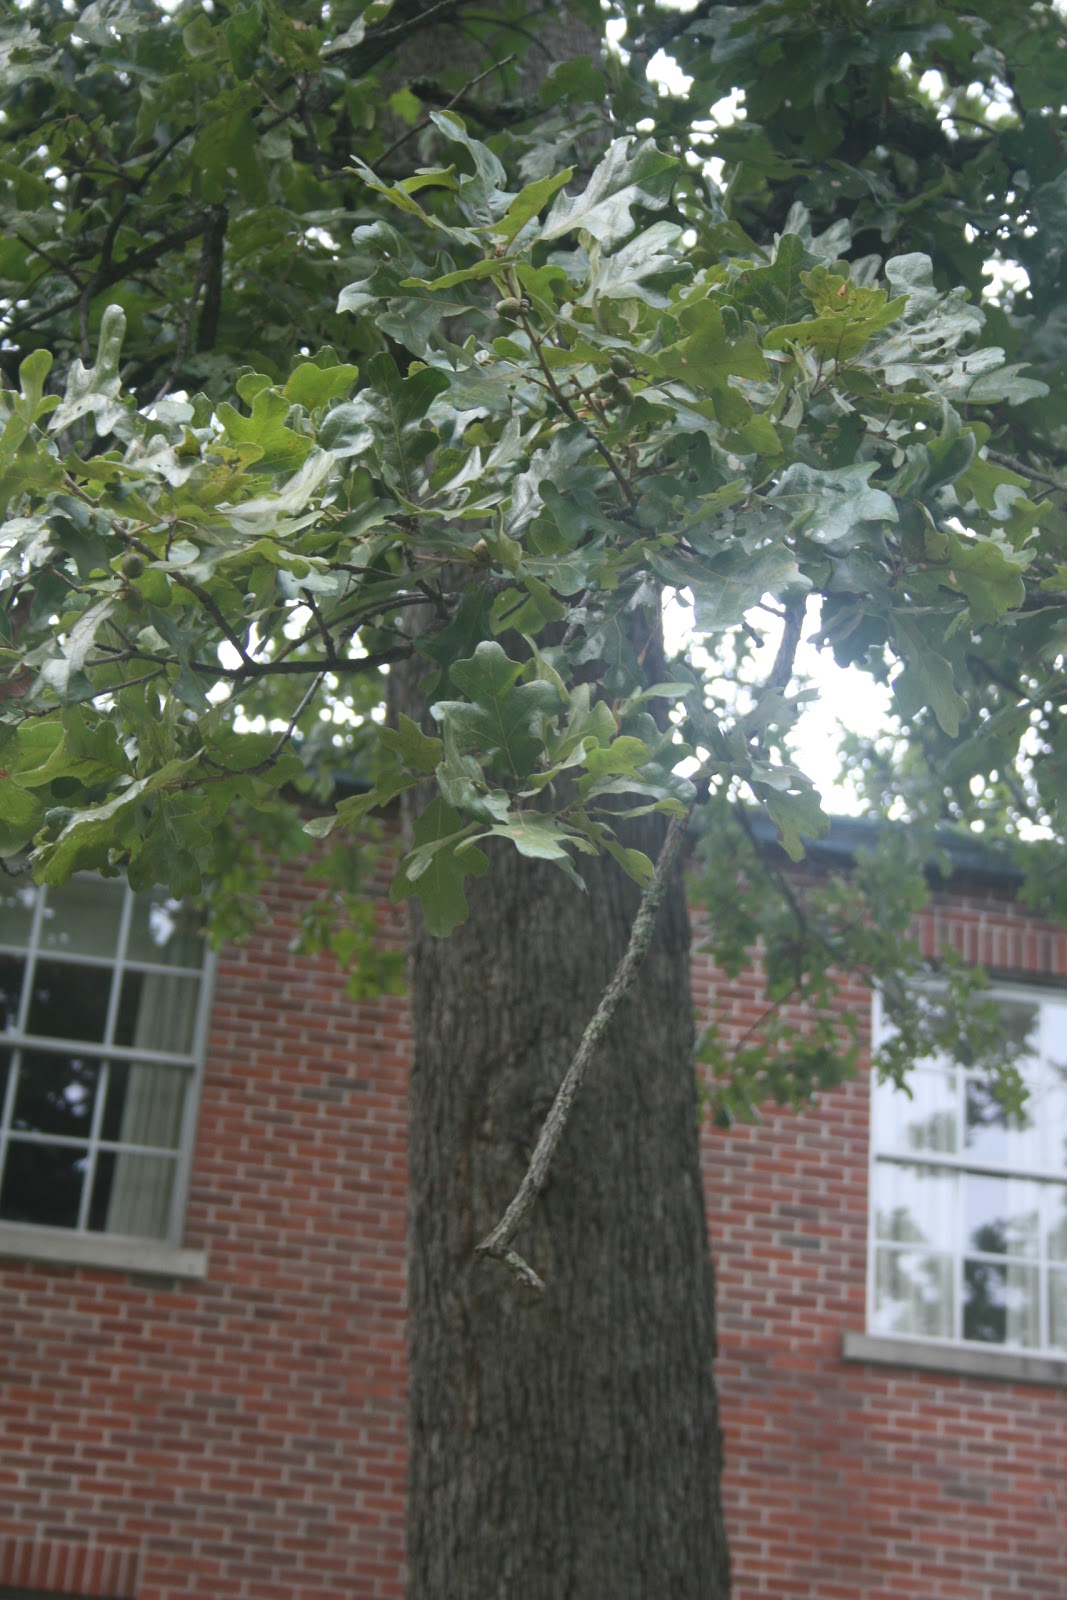 Centenary College Arboretum: Quercus stellata
